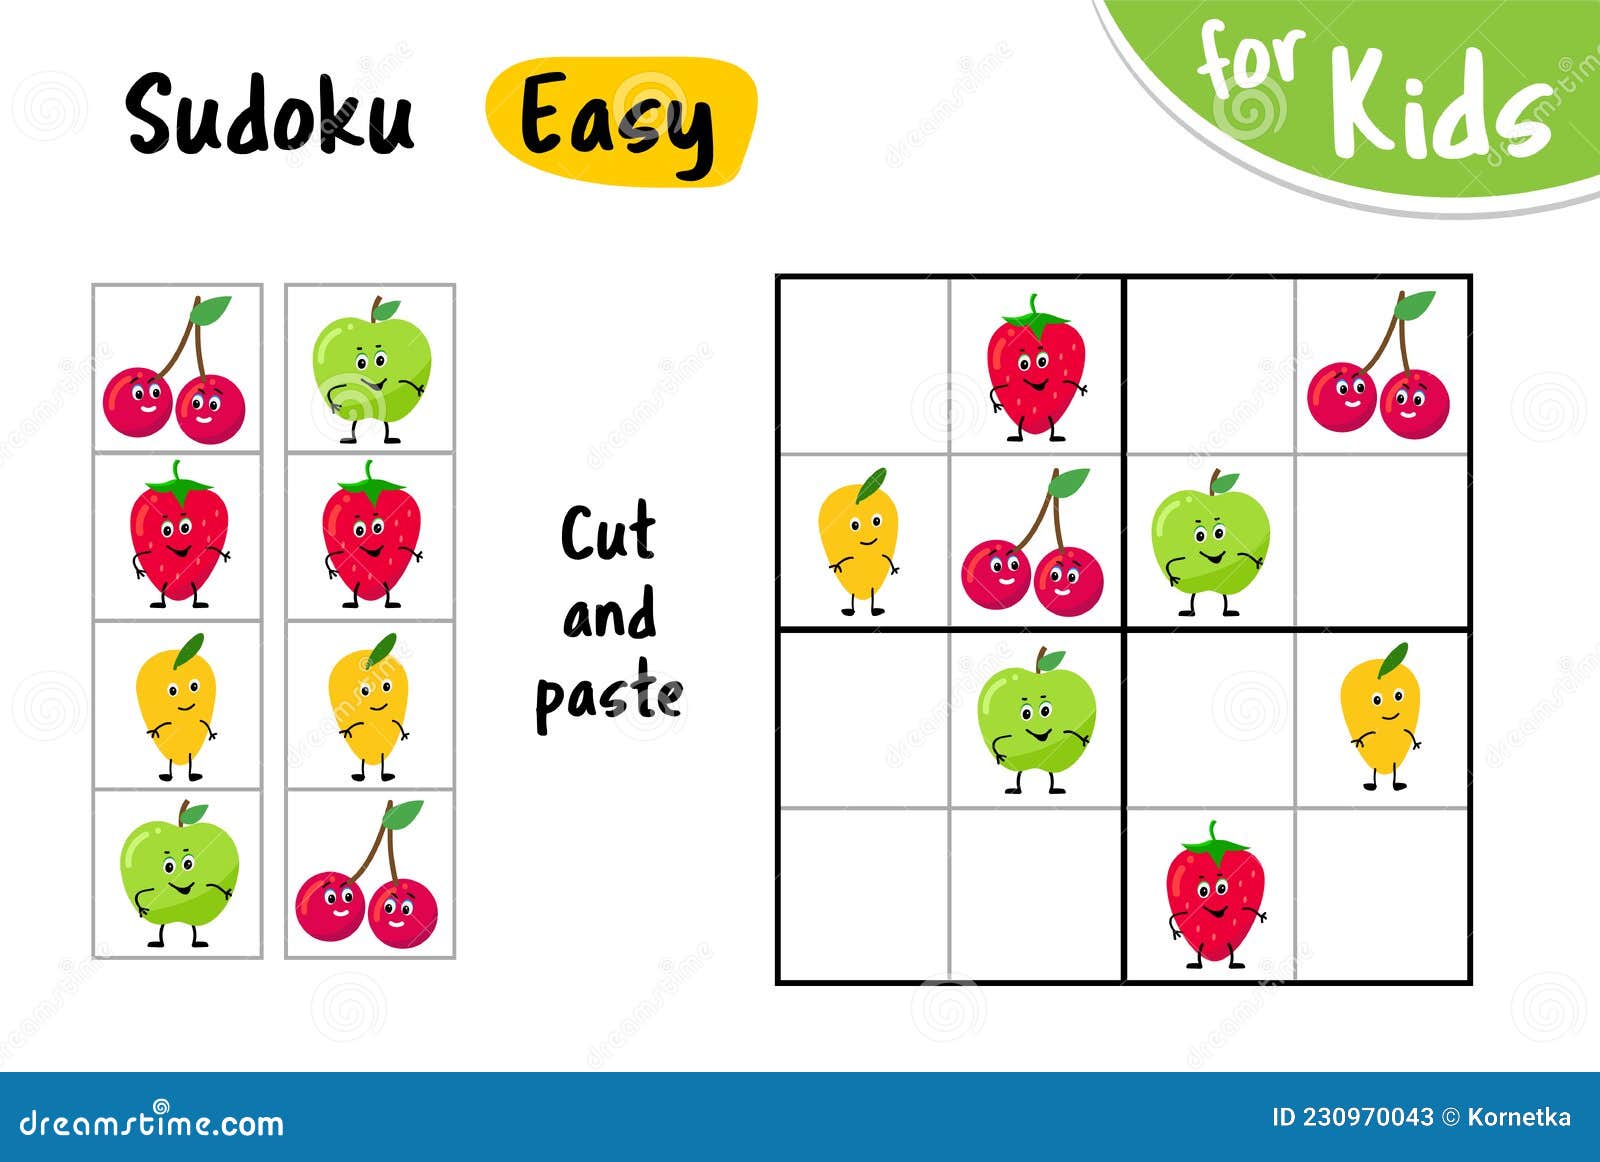 Sudoku com formas geometricas  atividades e jogos educativos